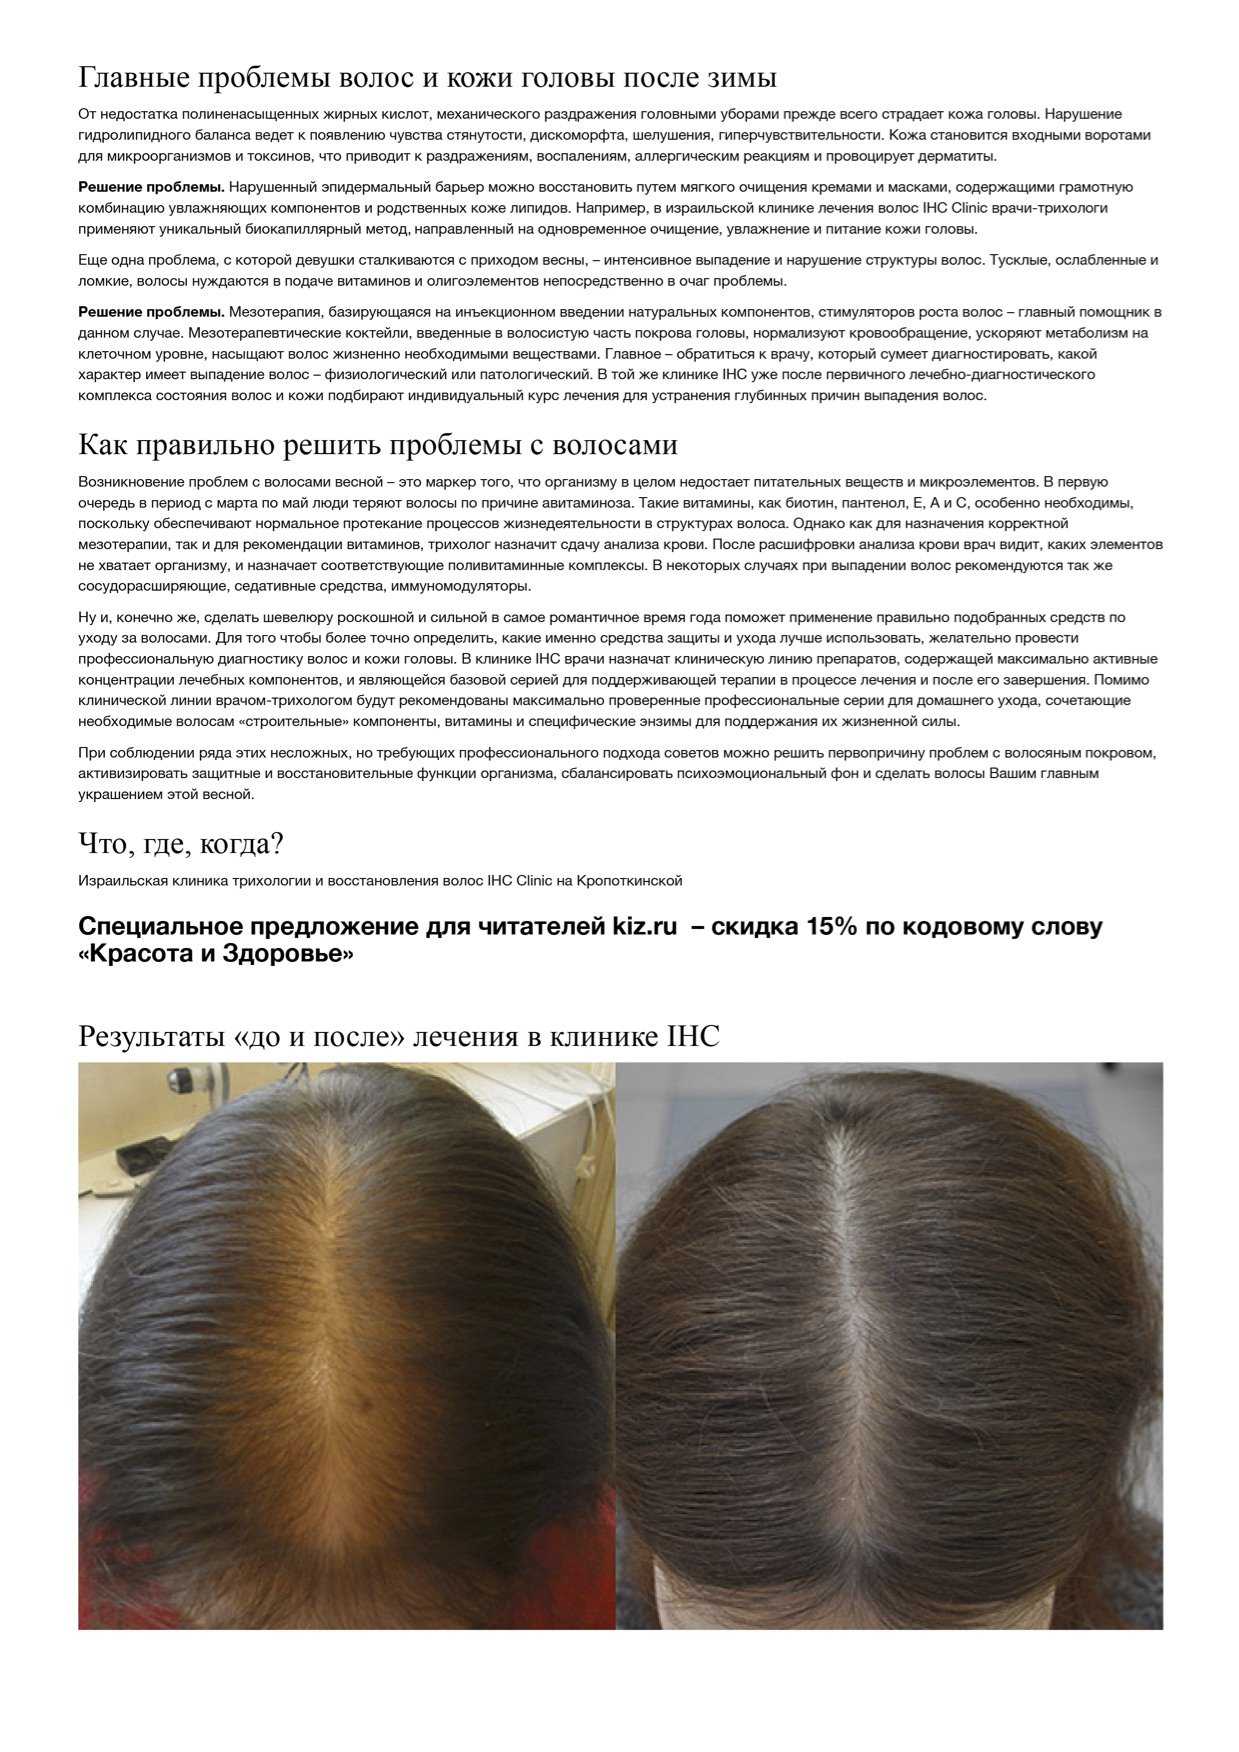 Маски для укрепления волос и роста [в домашних условиях] - обзор 9 эффективных укрепляющих масок